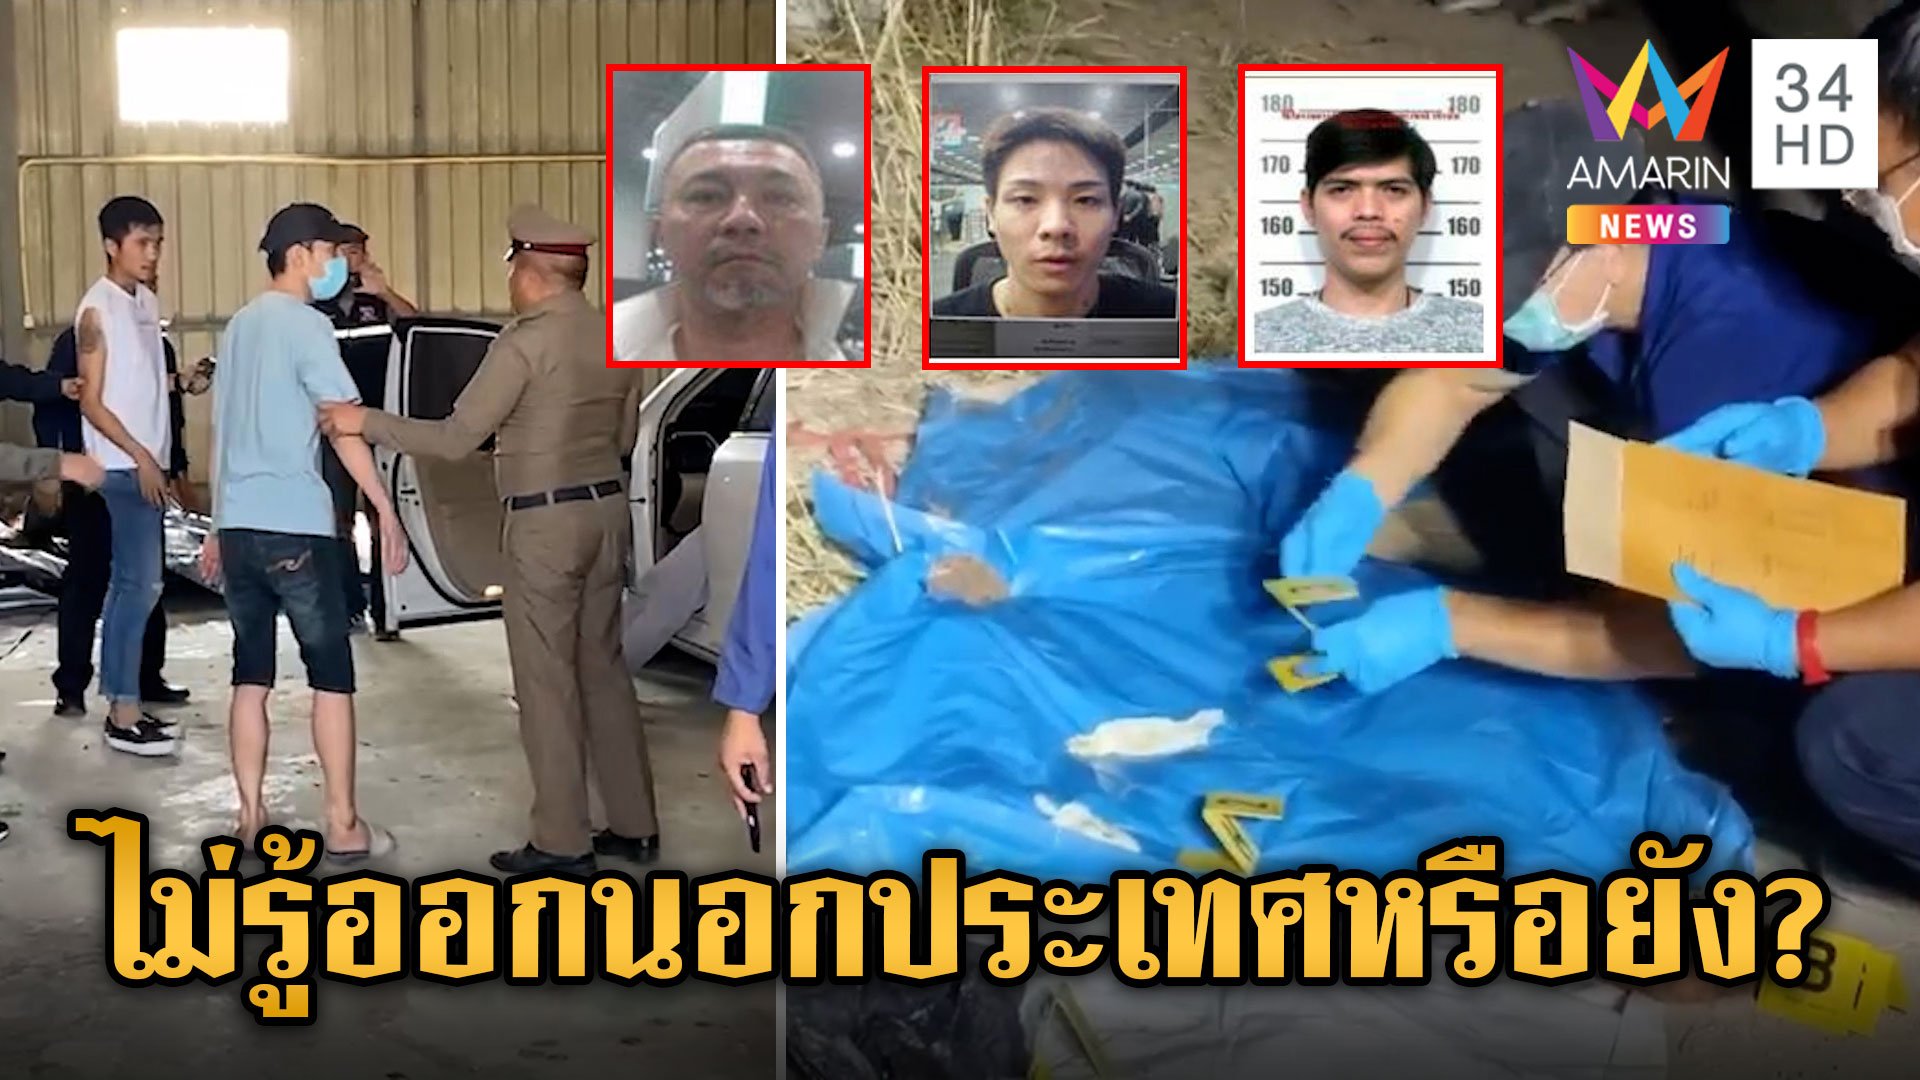 รวบคนไทยเอี่ยวคดีฆ่าหั่นศพ ซัดทอดชาวญี่ปุ่น 2 รายลงมือโหด อ้างถูกบังคับนำชิ้นส่วนไปทิ้ง | ข่าวเย็นอมรินทร์ | 24 เม.ย. 67 | AMARIN TVHD34